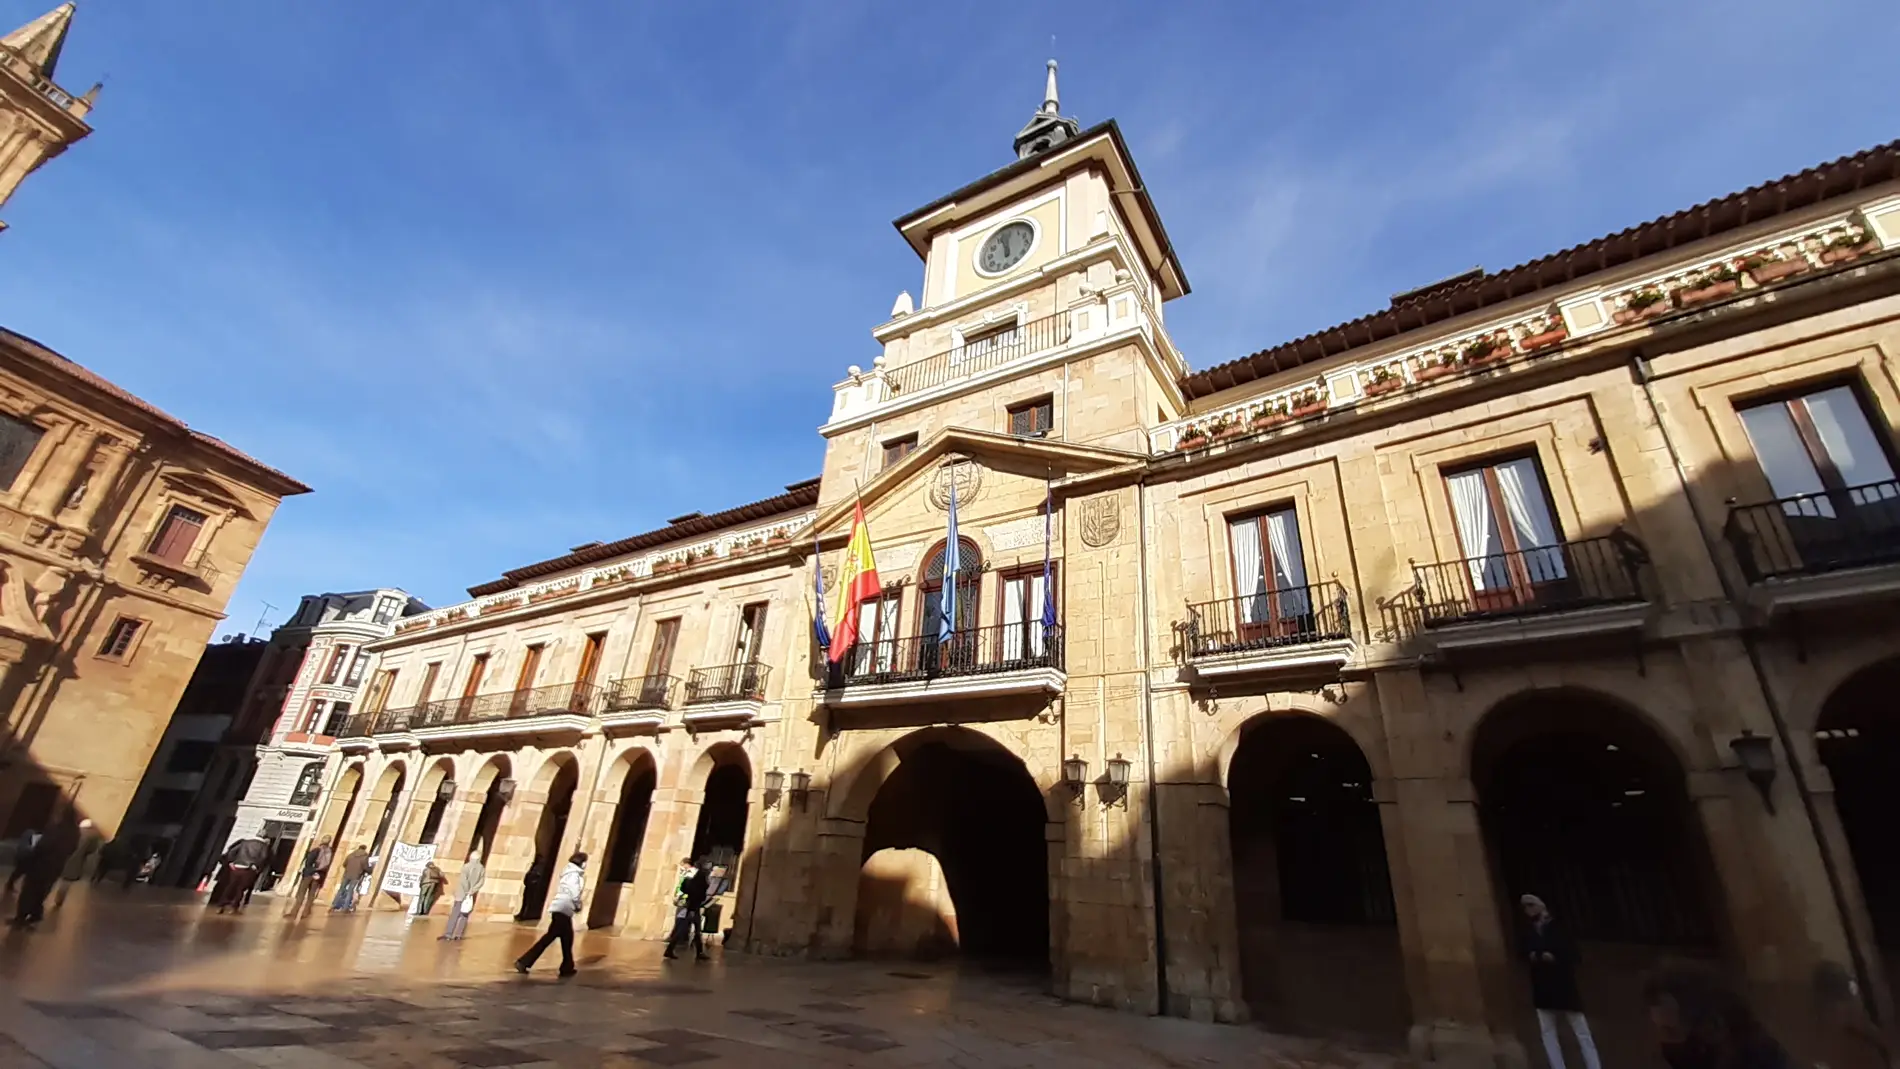 Sagi, Ruiz-Tilve, Carmen Quirós y Álvarez-Buylla, distinguidos por el Ayuntamiento de Oviedo